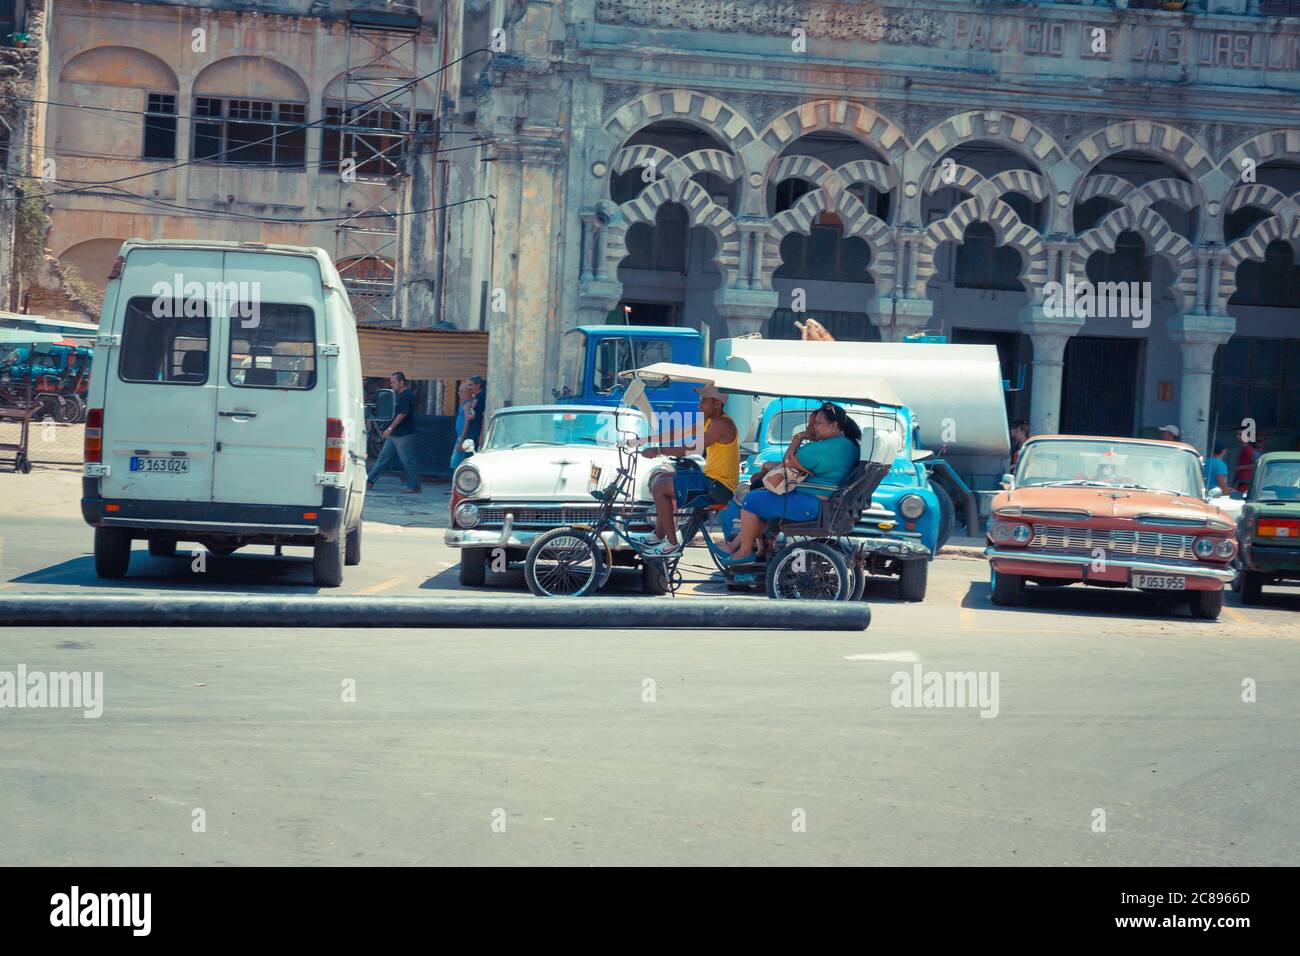 Havana / Cuba - 04.15.2015: Un tipico taxi cubano in bicicletta, aka bicitaxi in bicicletta per le strade di l'Avana passando davanti alle classiche auto americane, Isola o Foto Stock